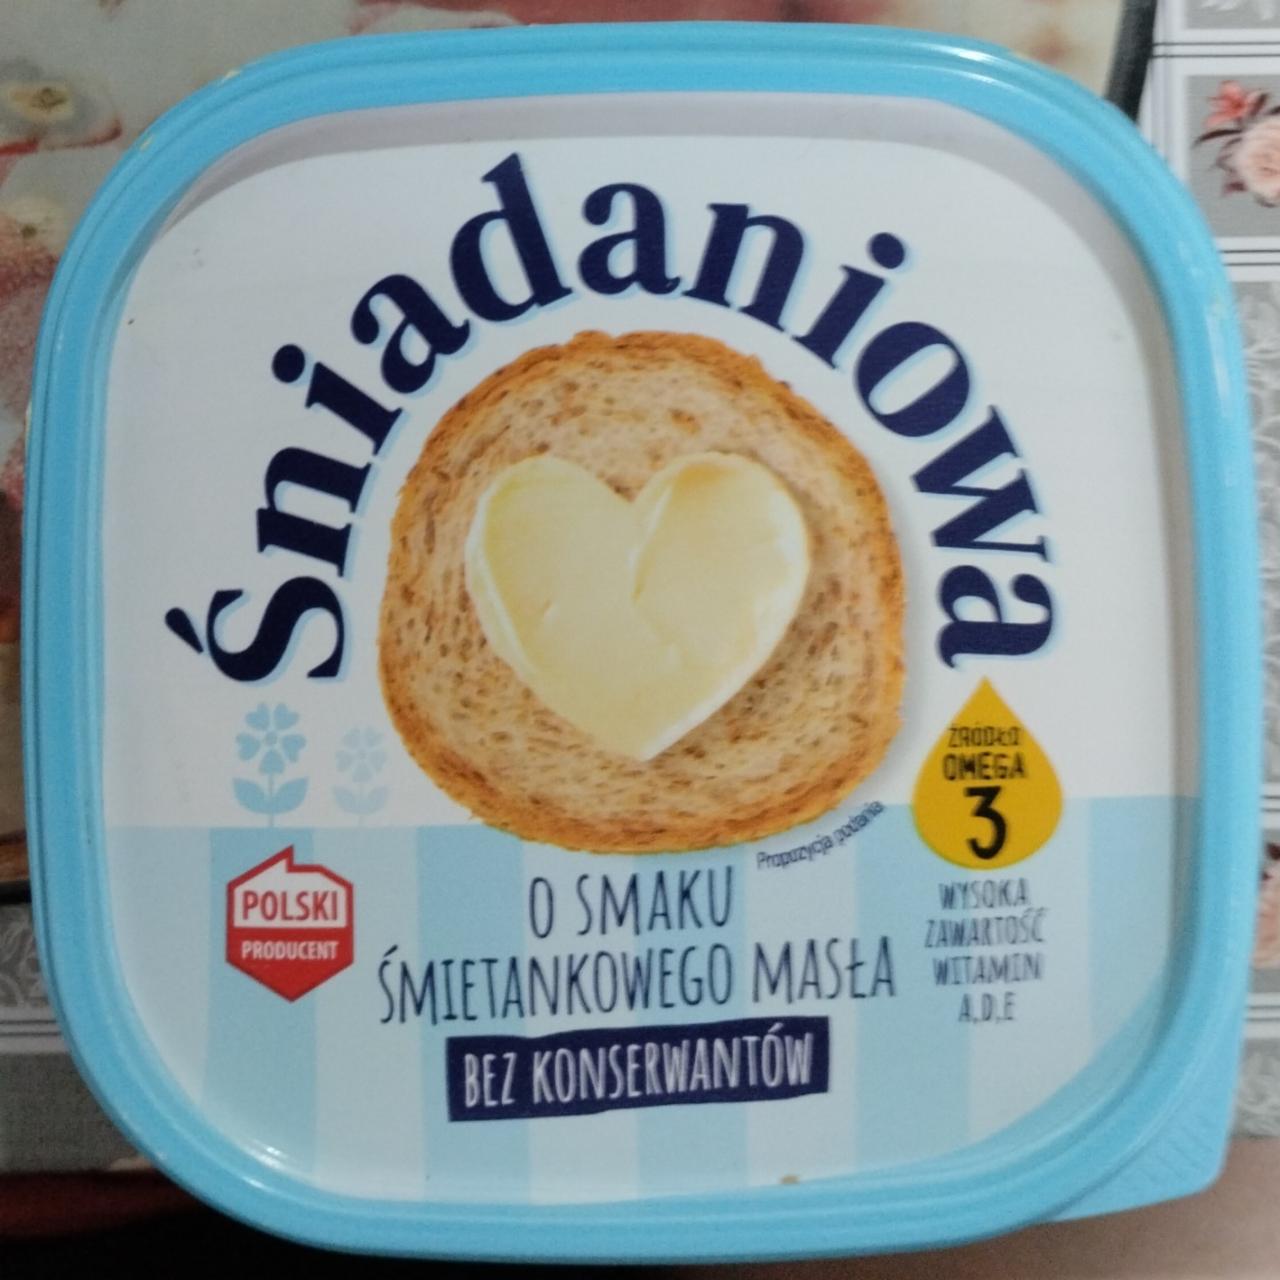 Zdjęcia - Śniadaniowa margaryna o smaku śmietankowego masła